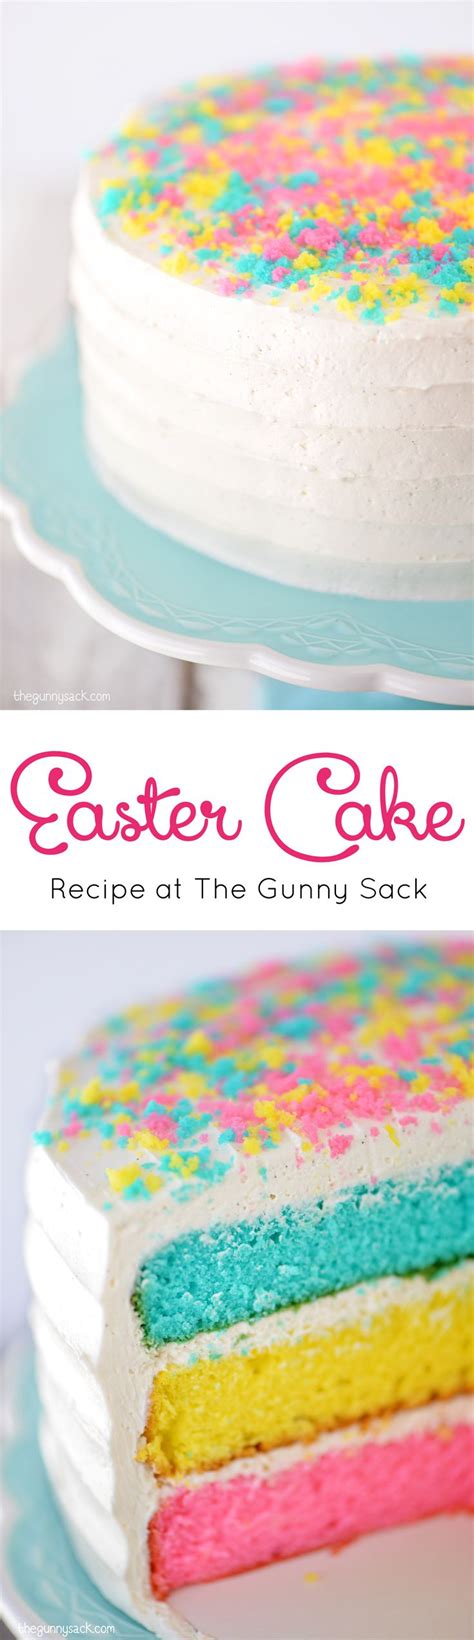 Easter Cake Recipe Easter Cake Recipes Easter Cakes Easter Baking